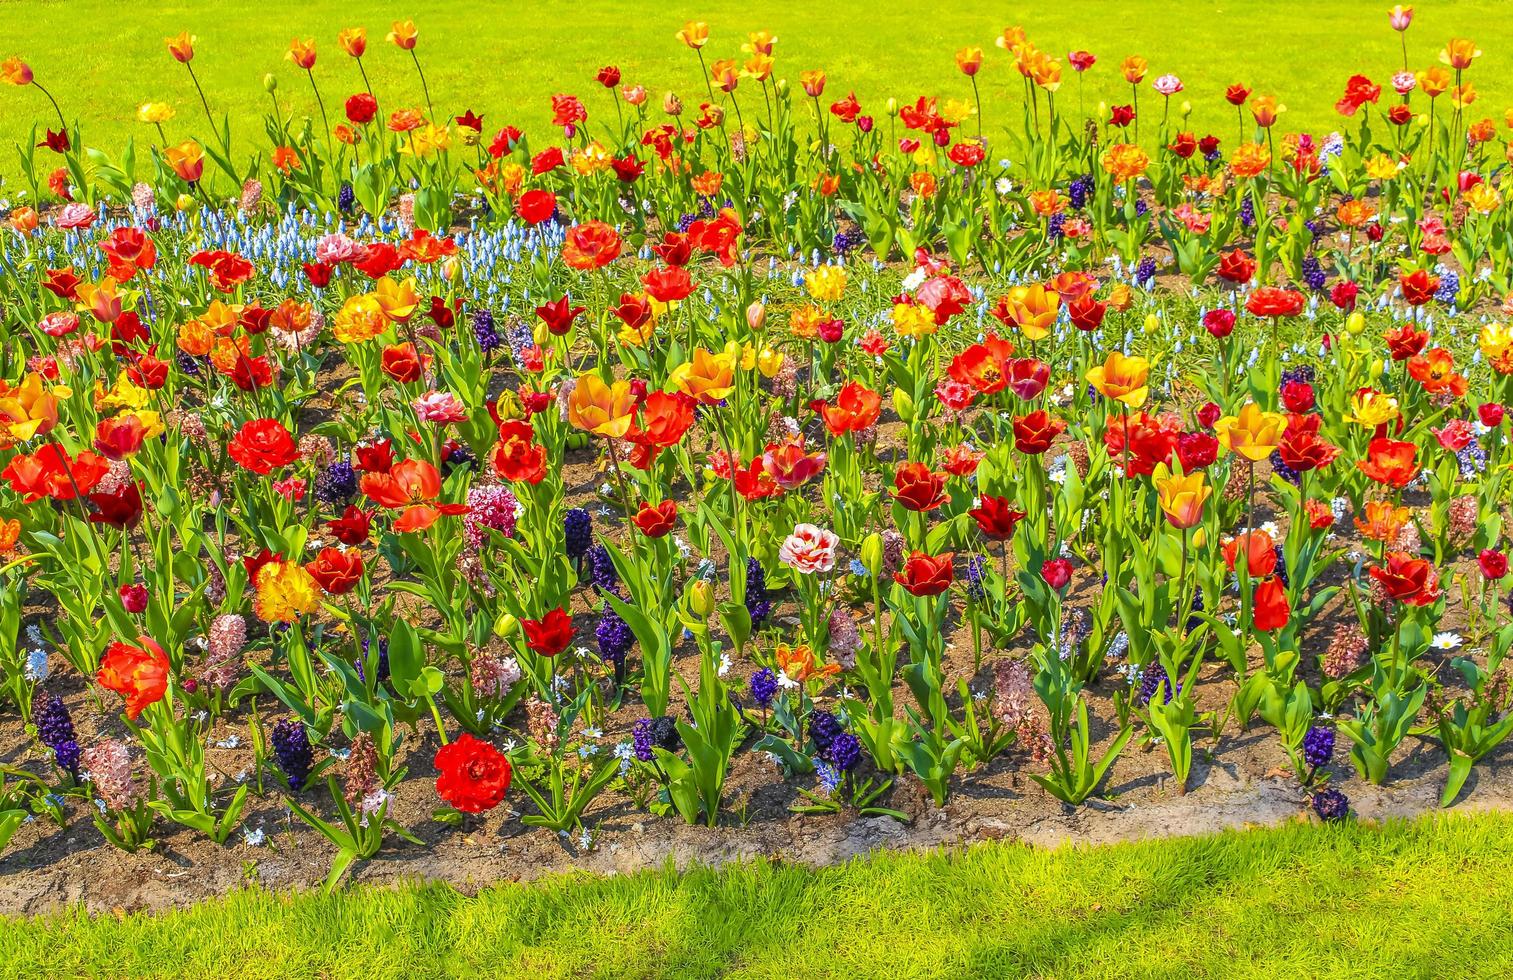 Rose jaune rouge tulipes jonquilles parc de Keukenhof lisse Hollande Pays-Bas photo